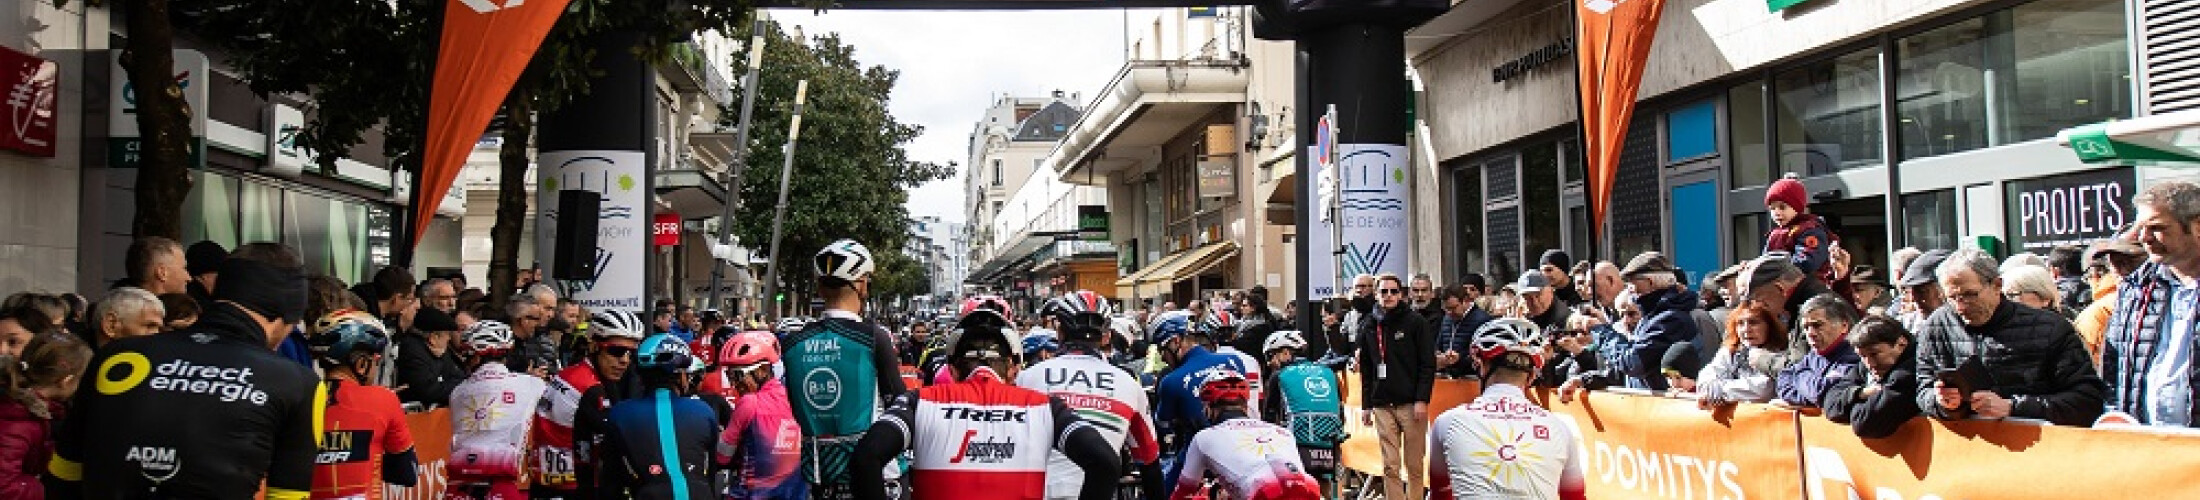 Résidences services seniors Domitys partenaire course cycliste Paris-Nice